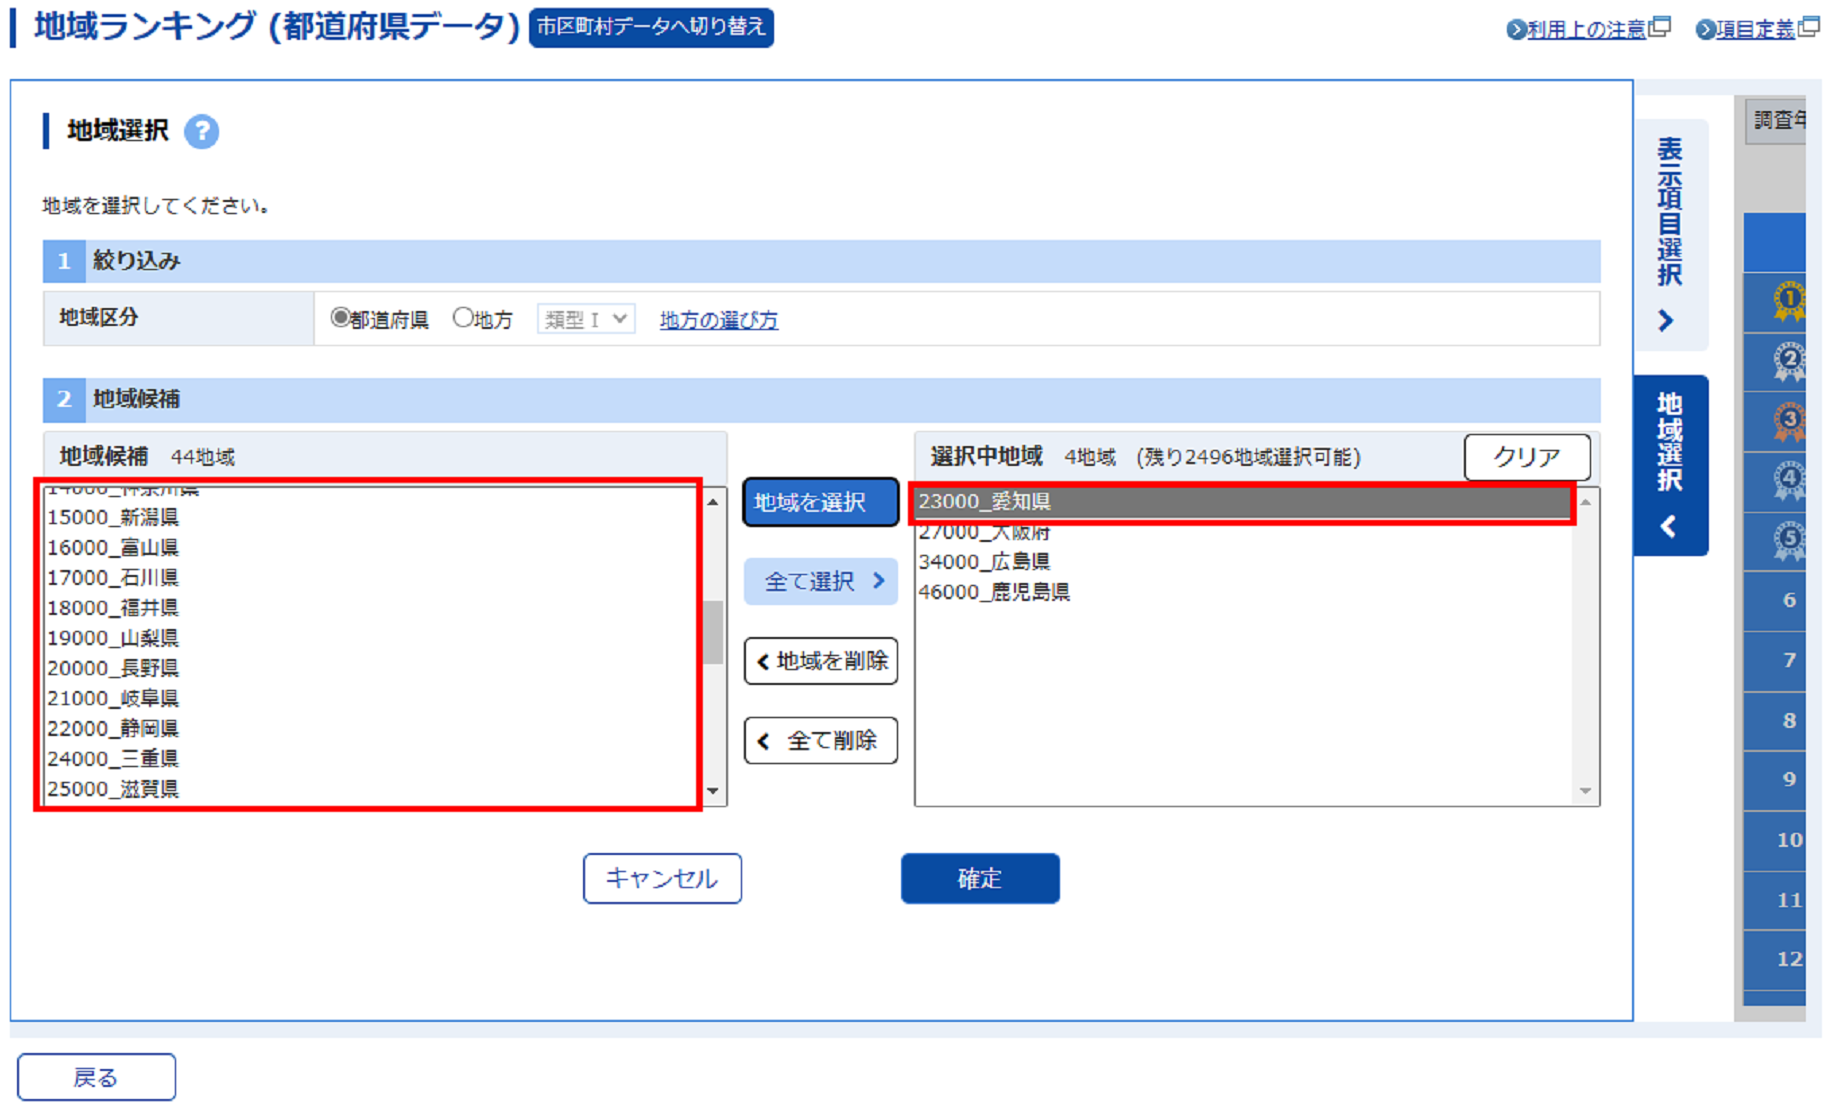 地域候補欄から「愛知県」が追加され、選択中地域欄に表示されます。